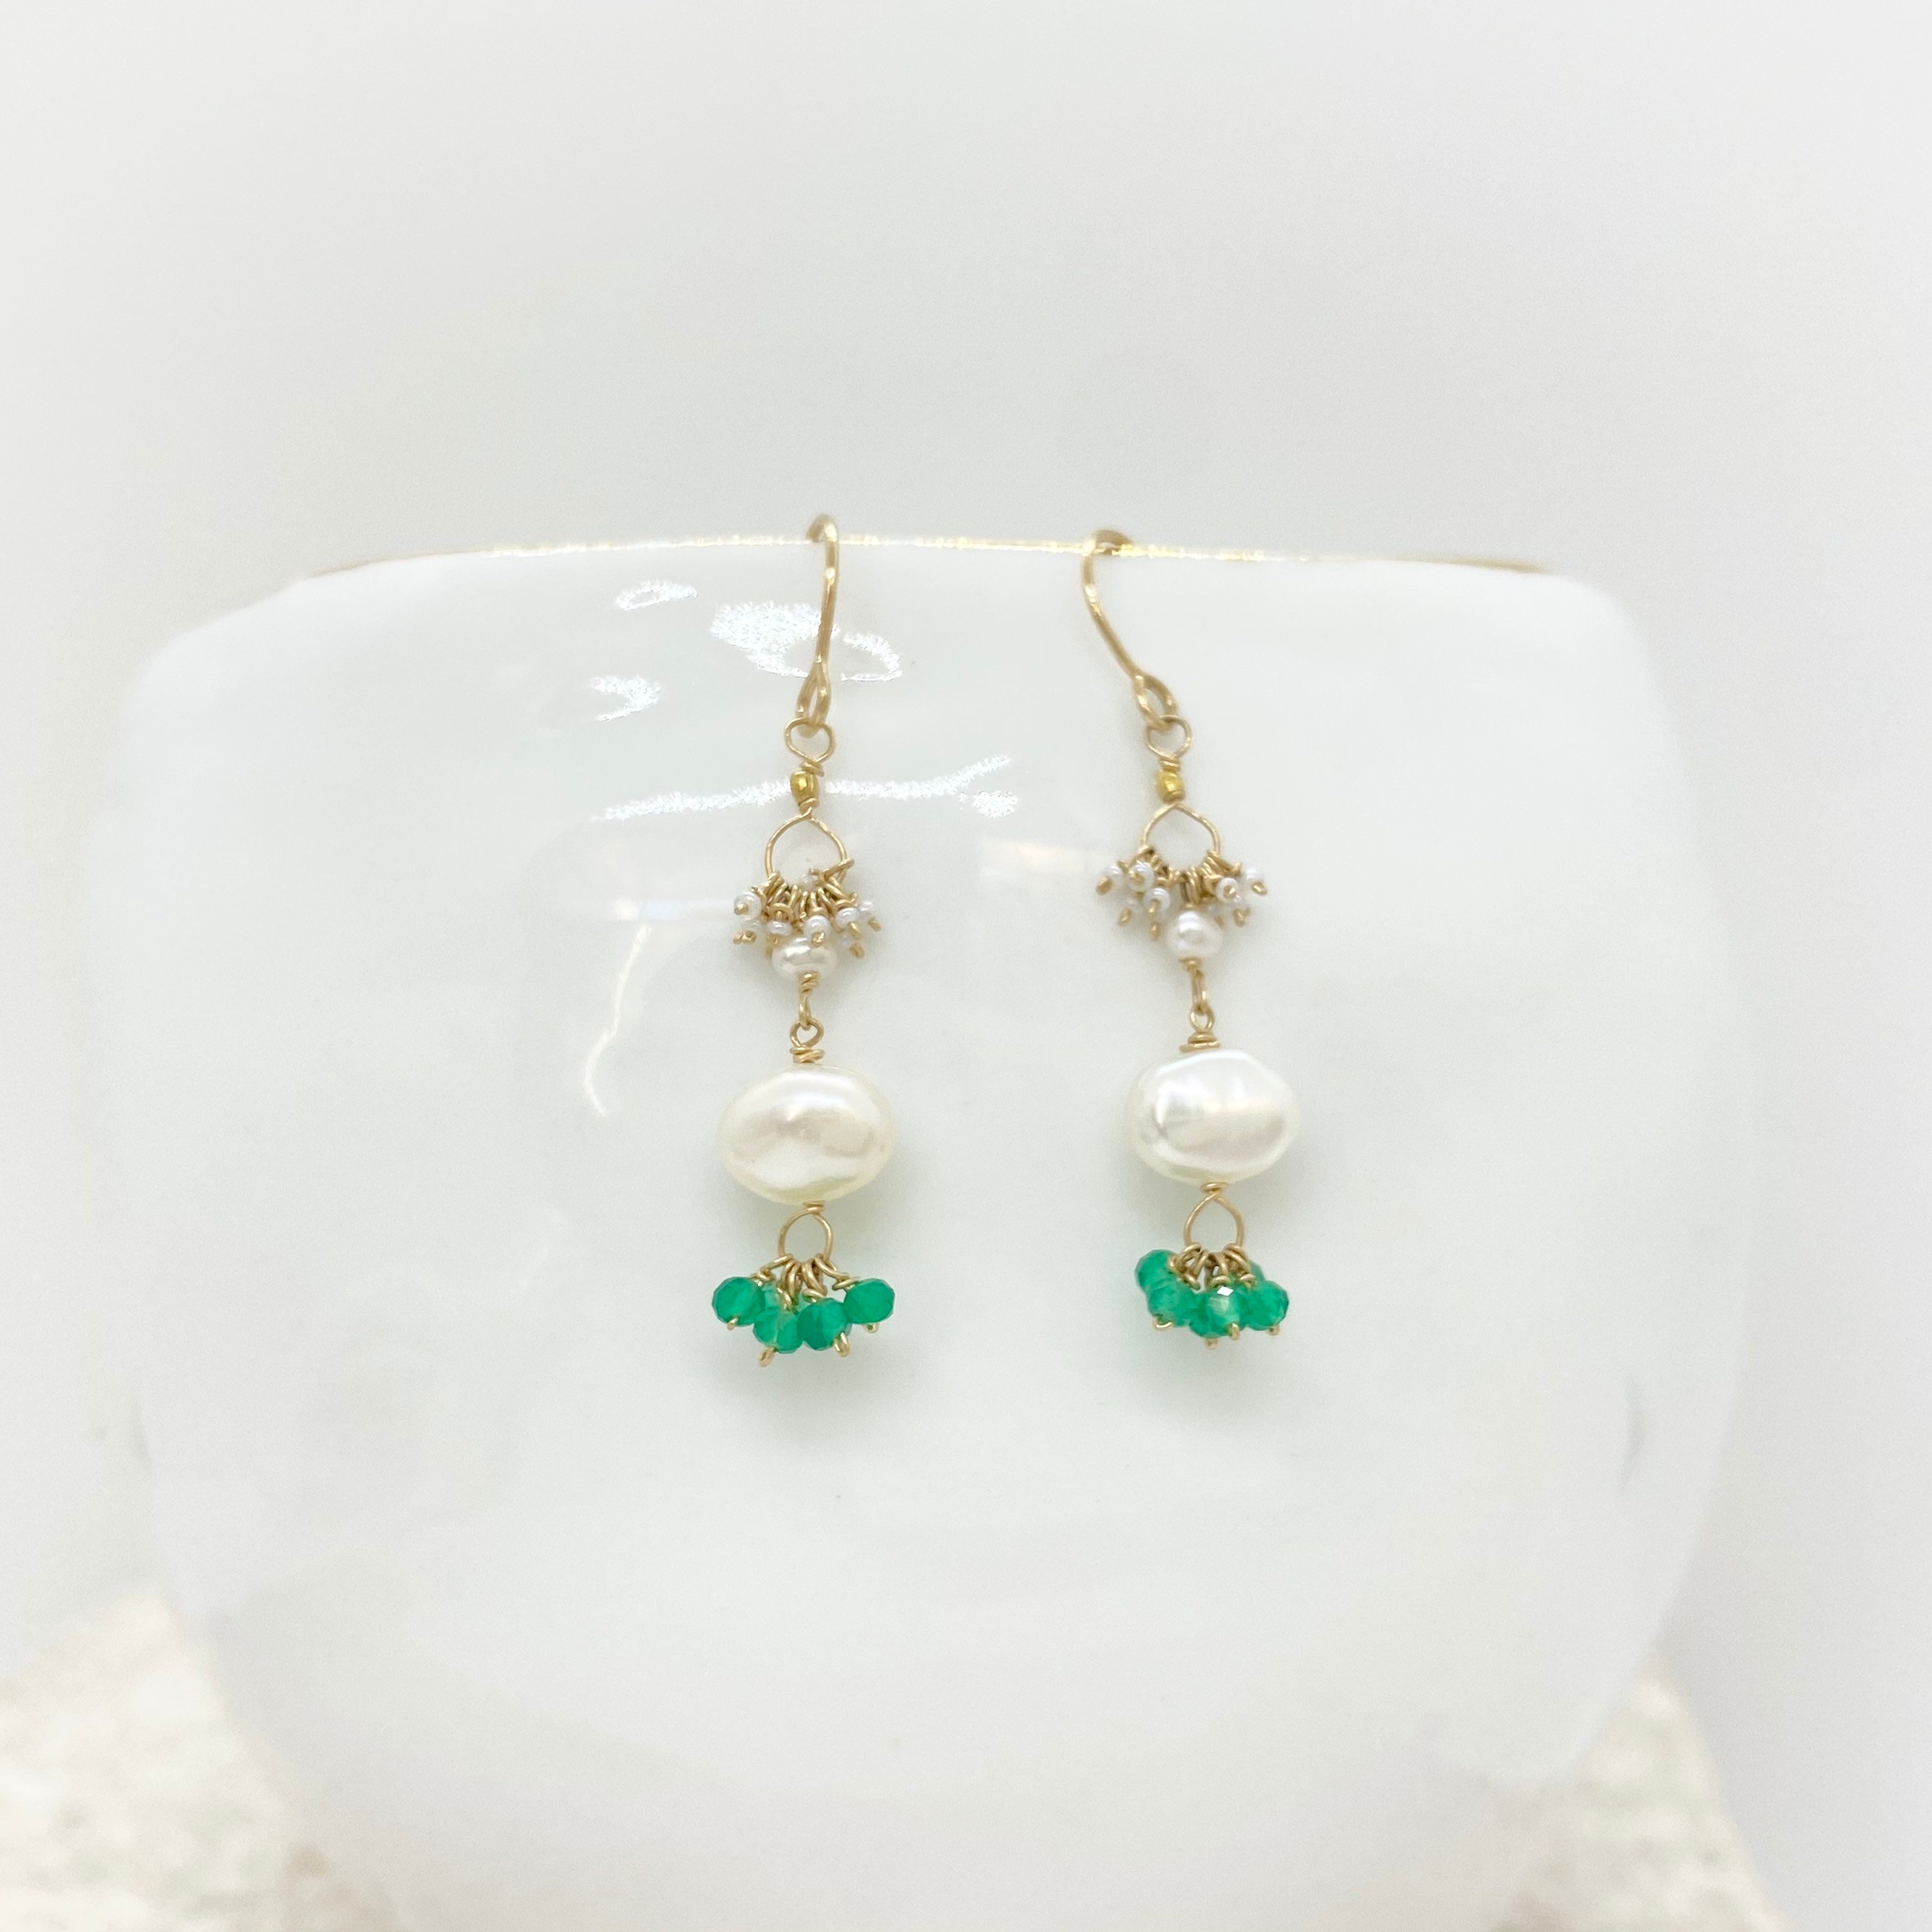 White Freshwater Pearls & Kyanite Gemstones 14ct Rolled Gold Earrings 